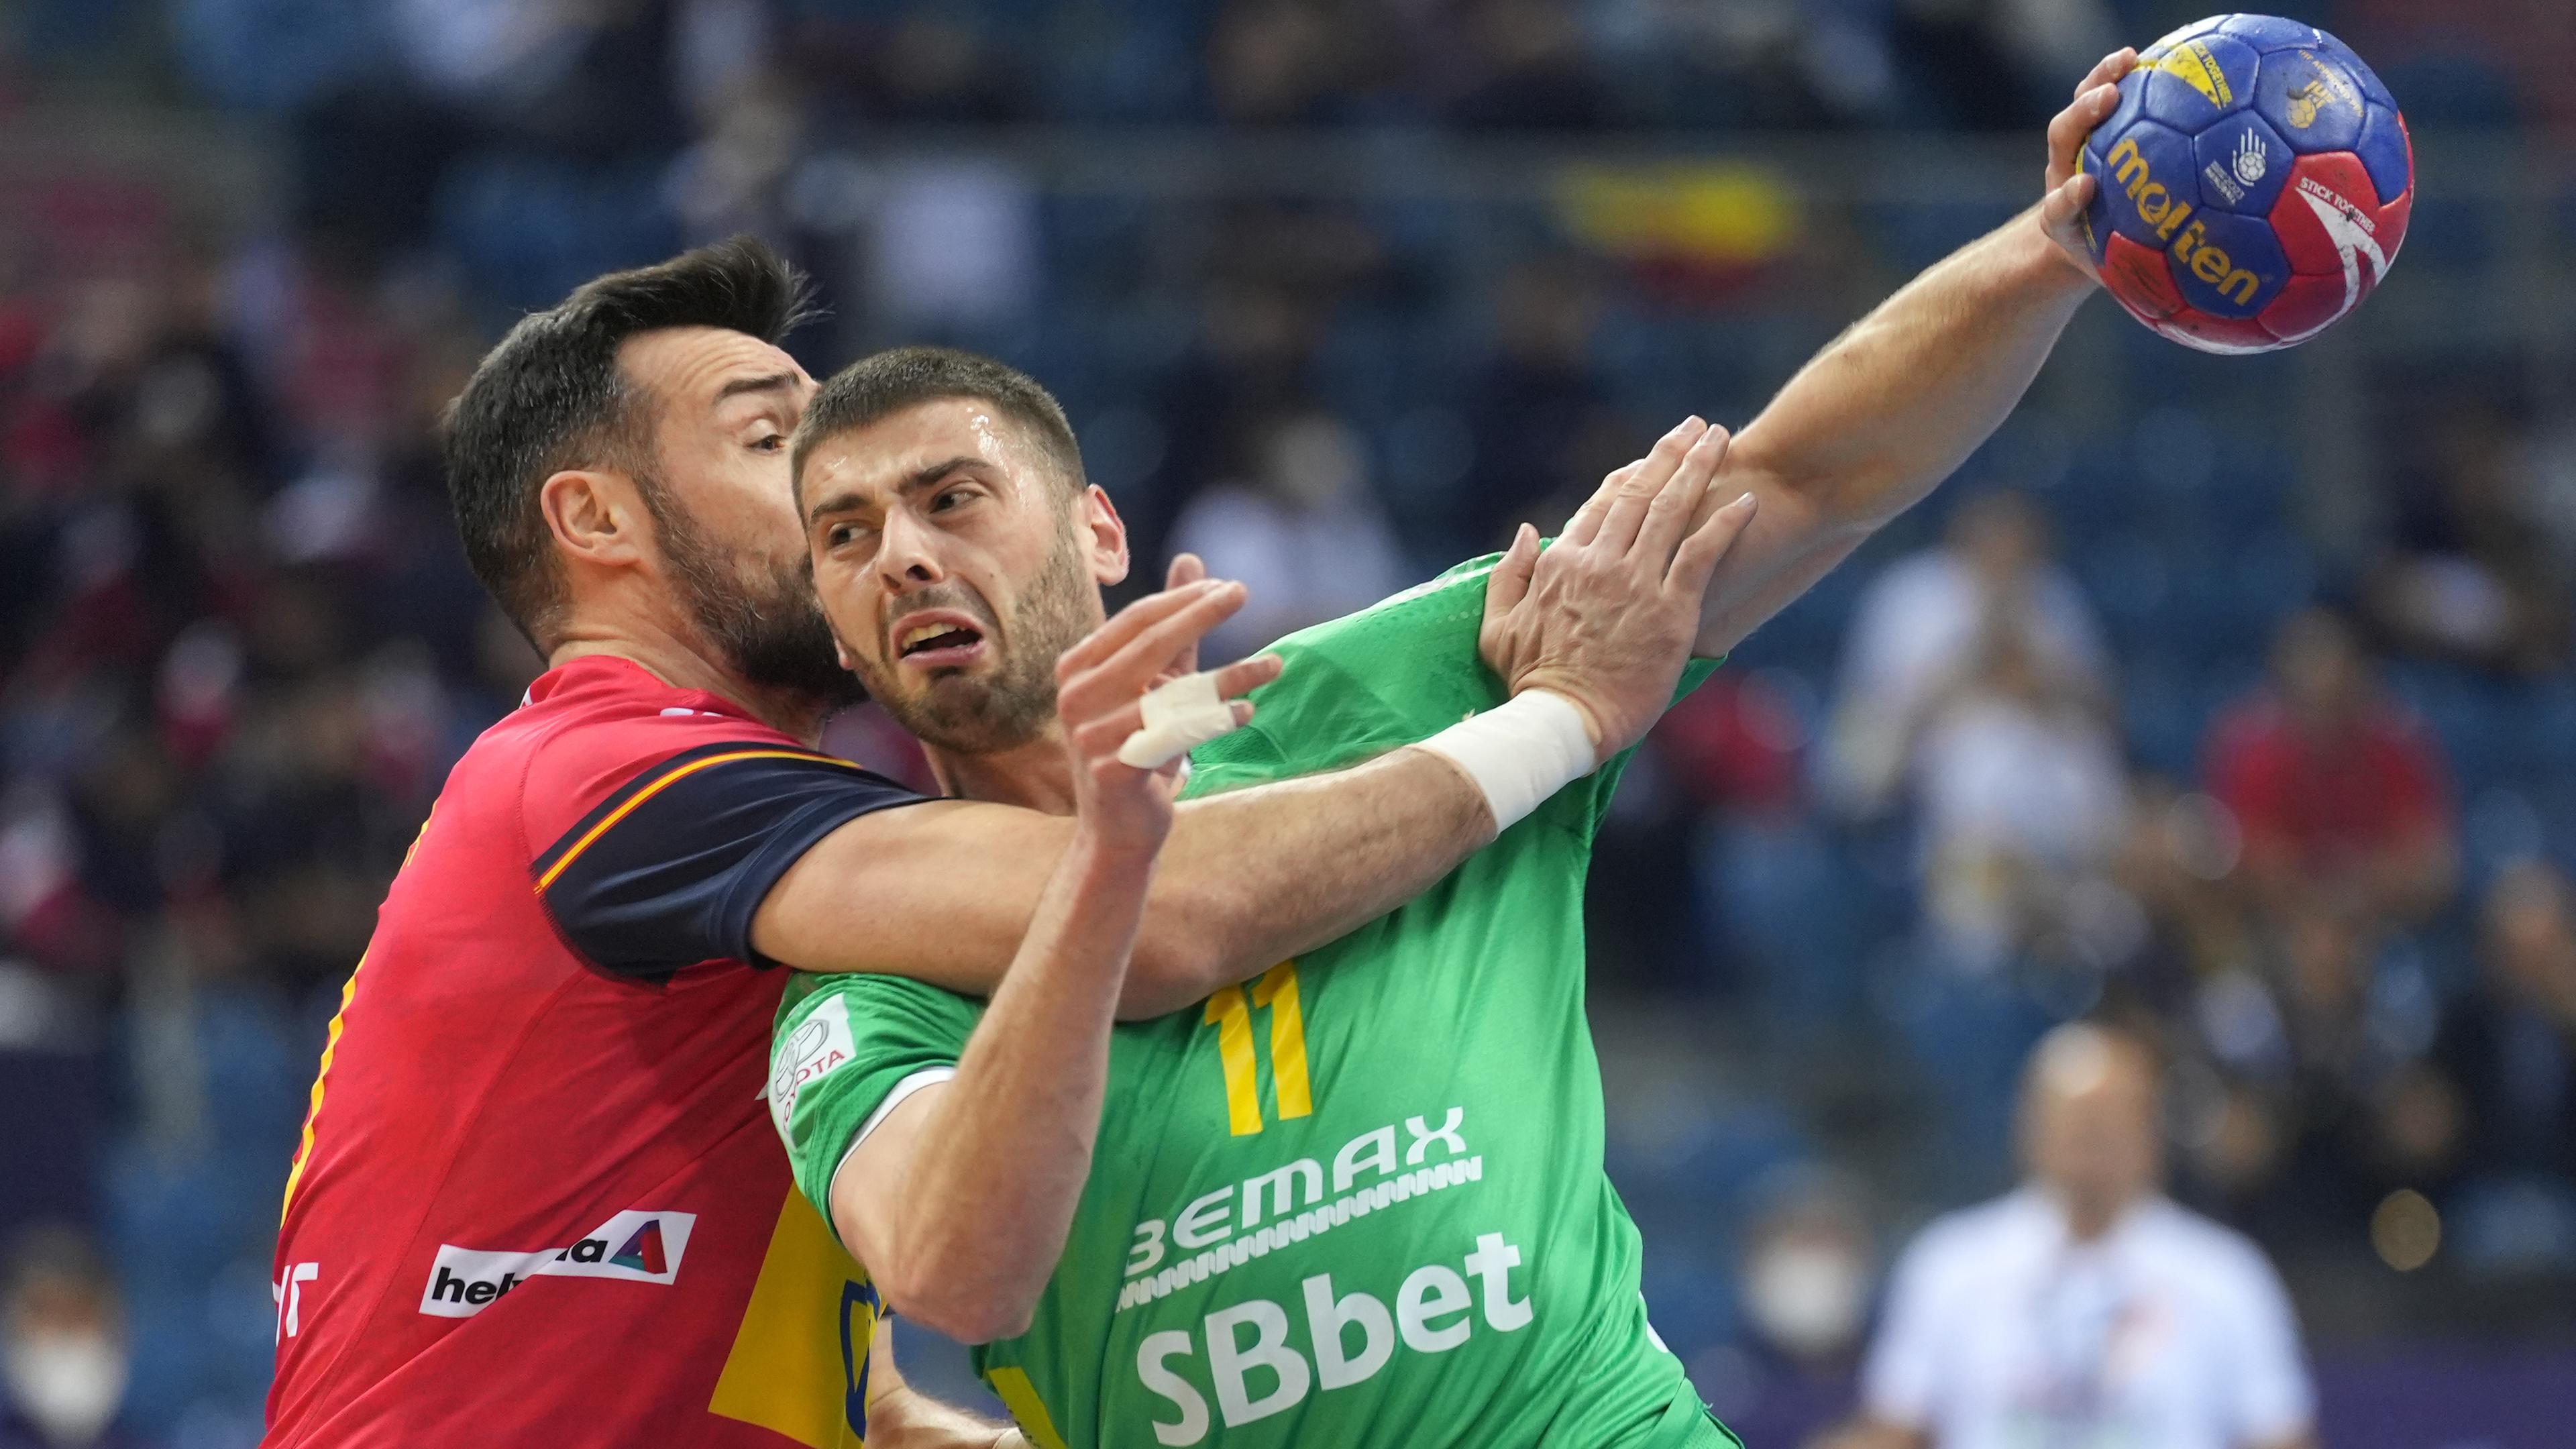 Gedeon Guardiola (l.) versucht Branko Vujovic zu blocken